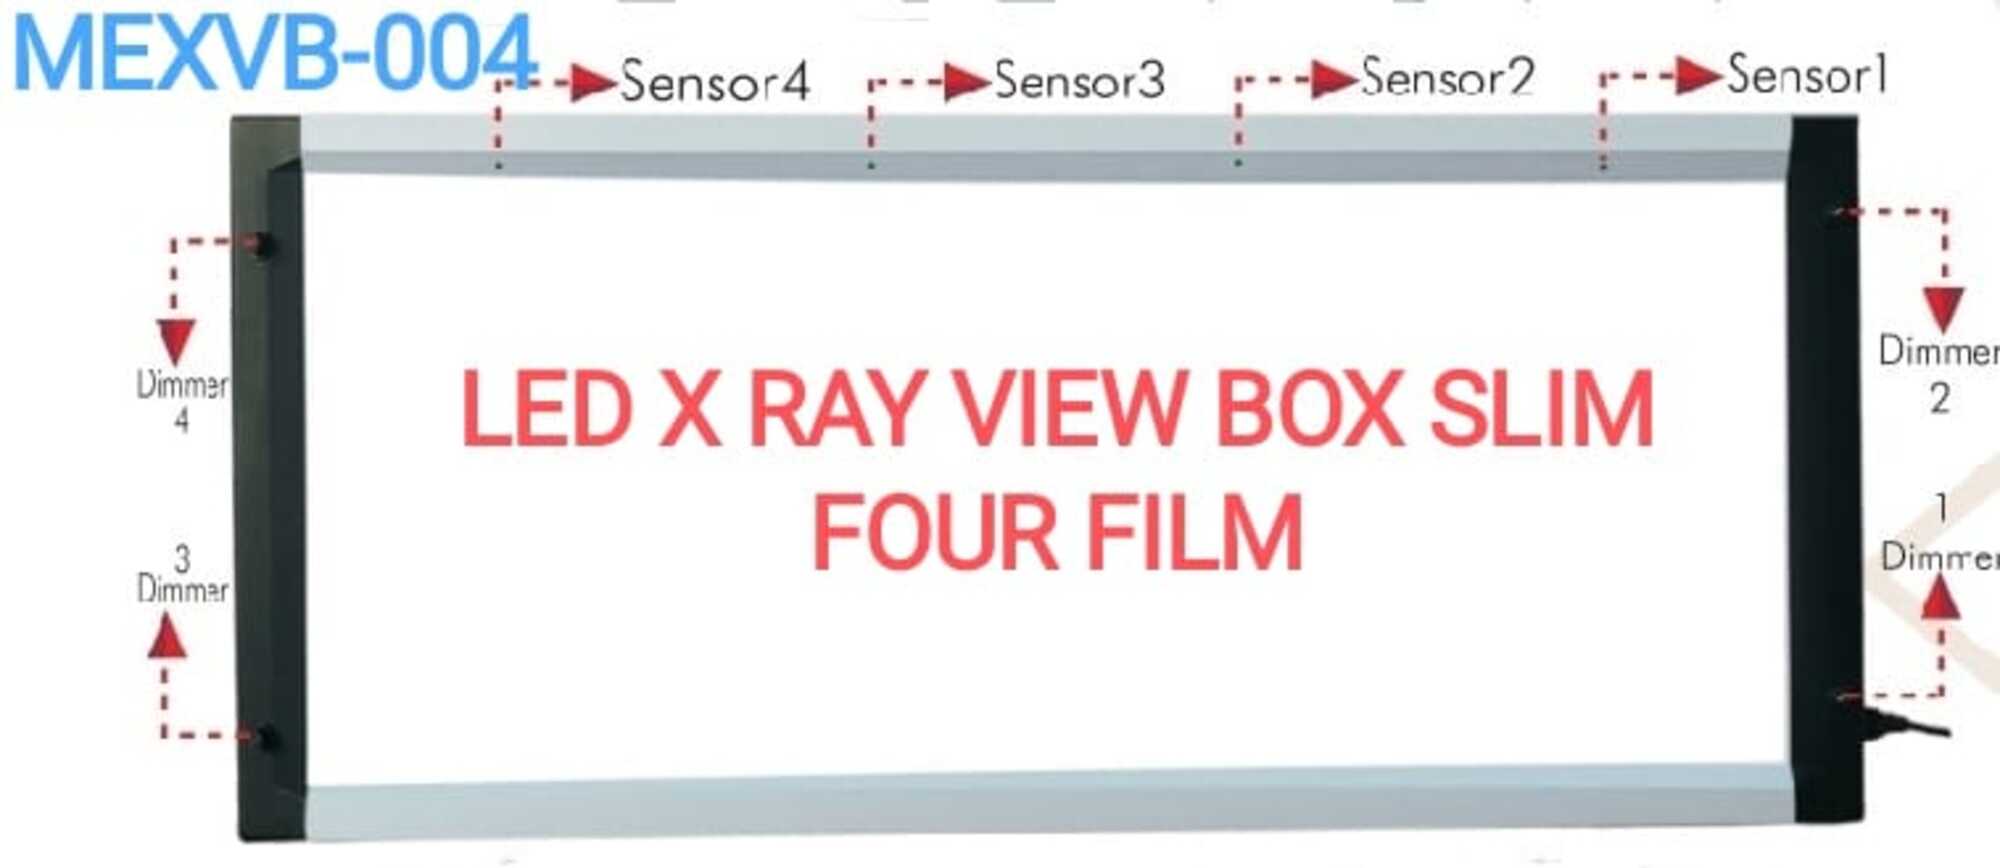 LED X RAY VIEW BOX SLIM FOUR FILM